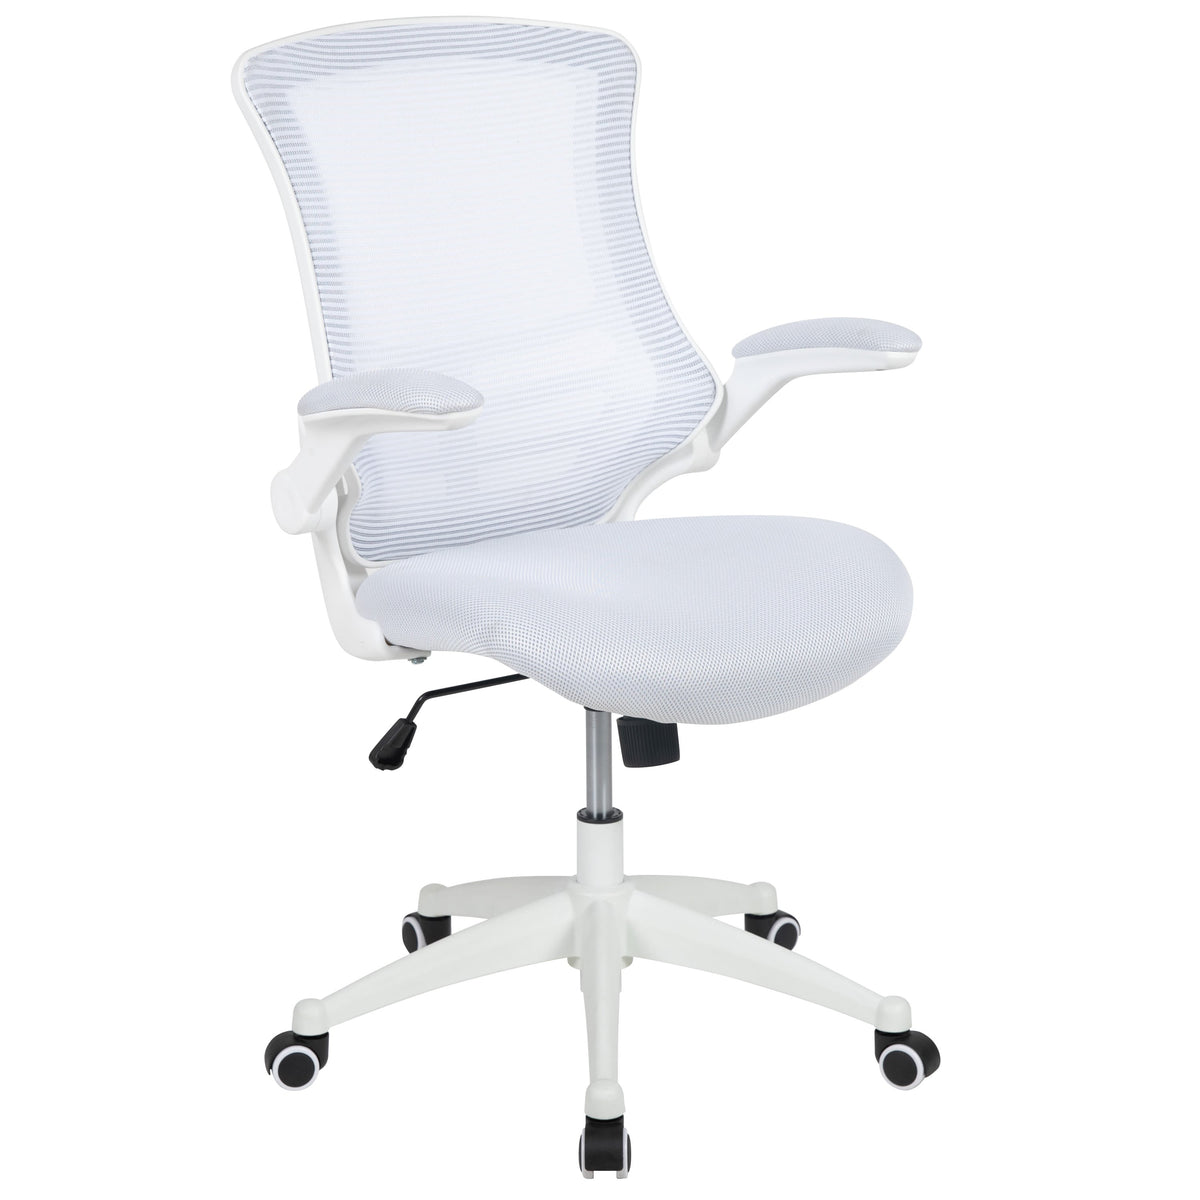 White Mesh/White Frame |#| Mid-Back White Mesh Ergonomic Task Office Chair, White Frame - Flip-Up Arms